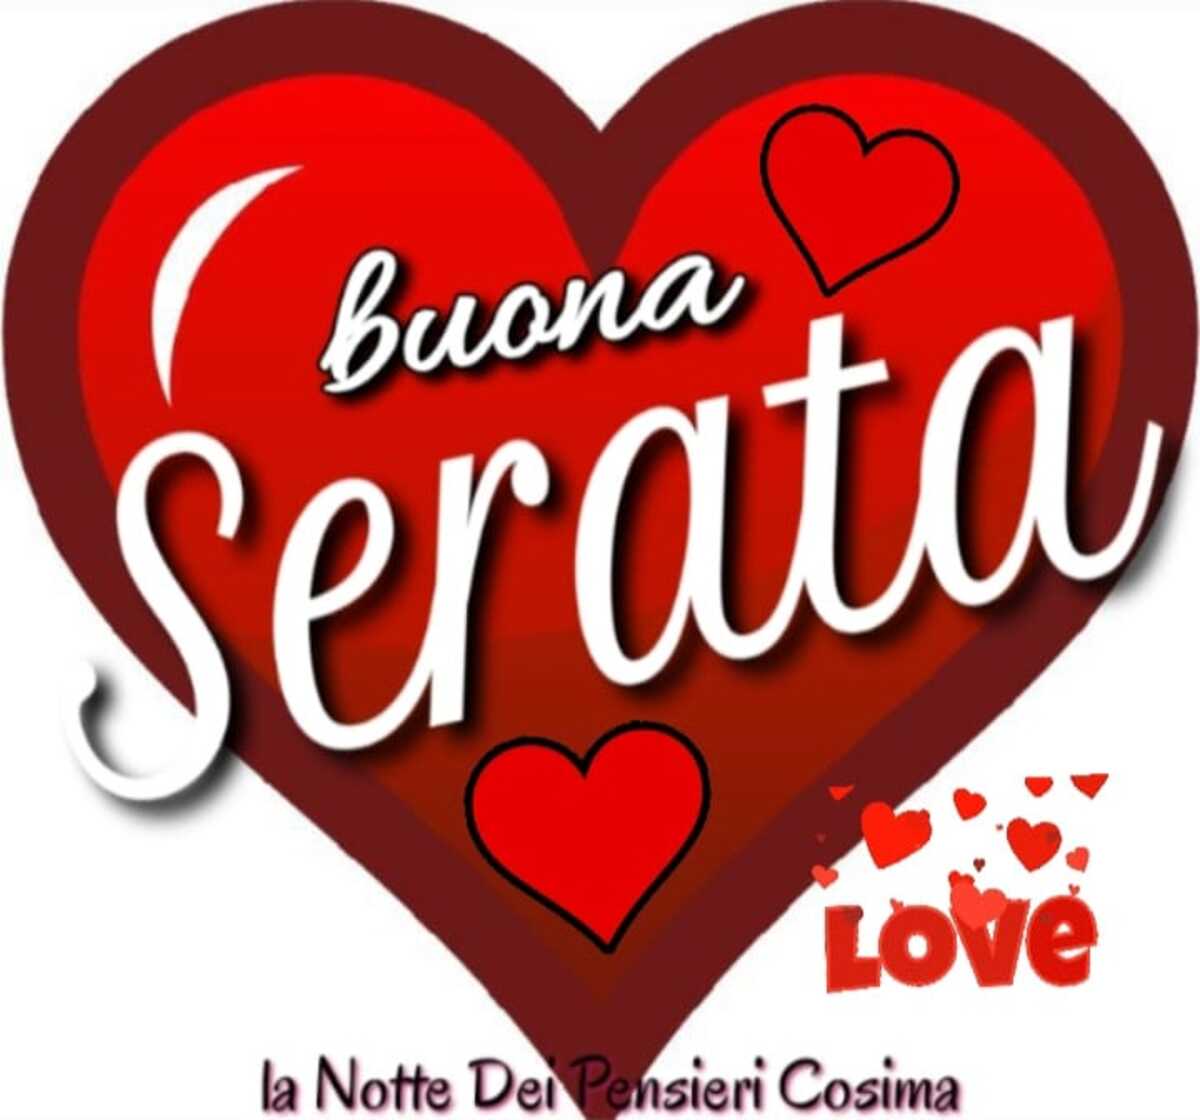 Buona Serata Love